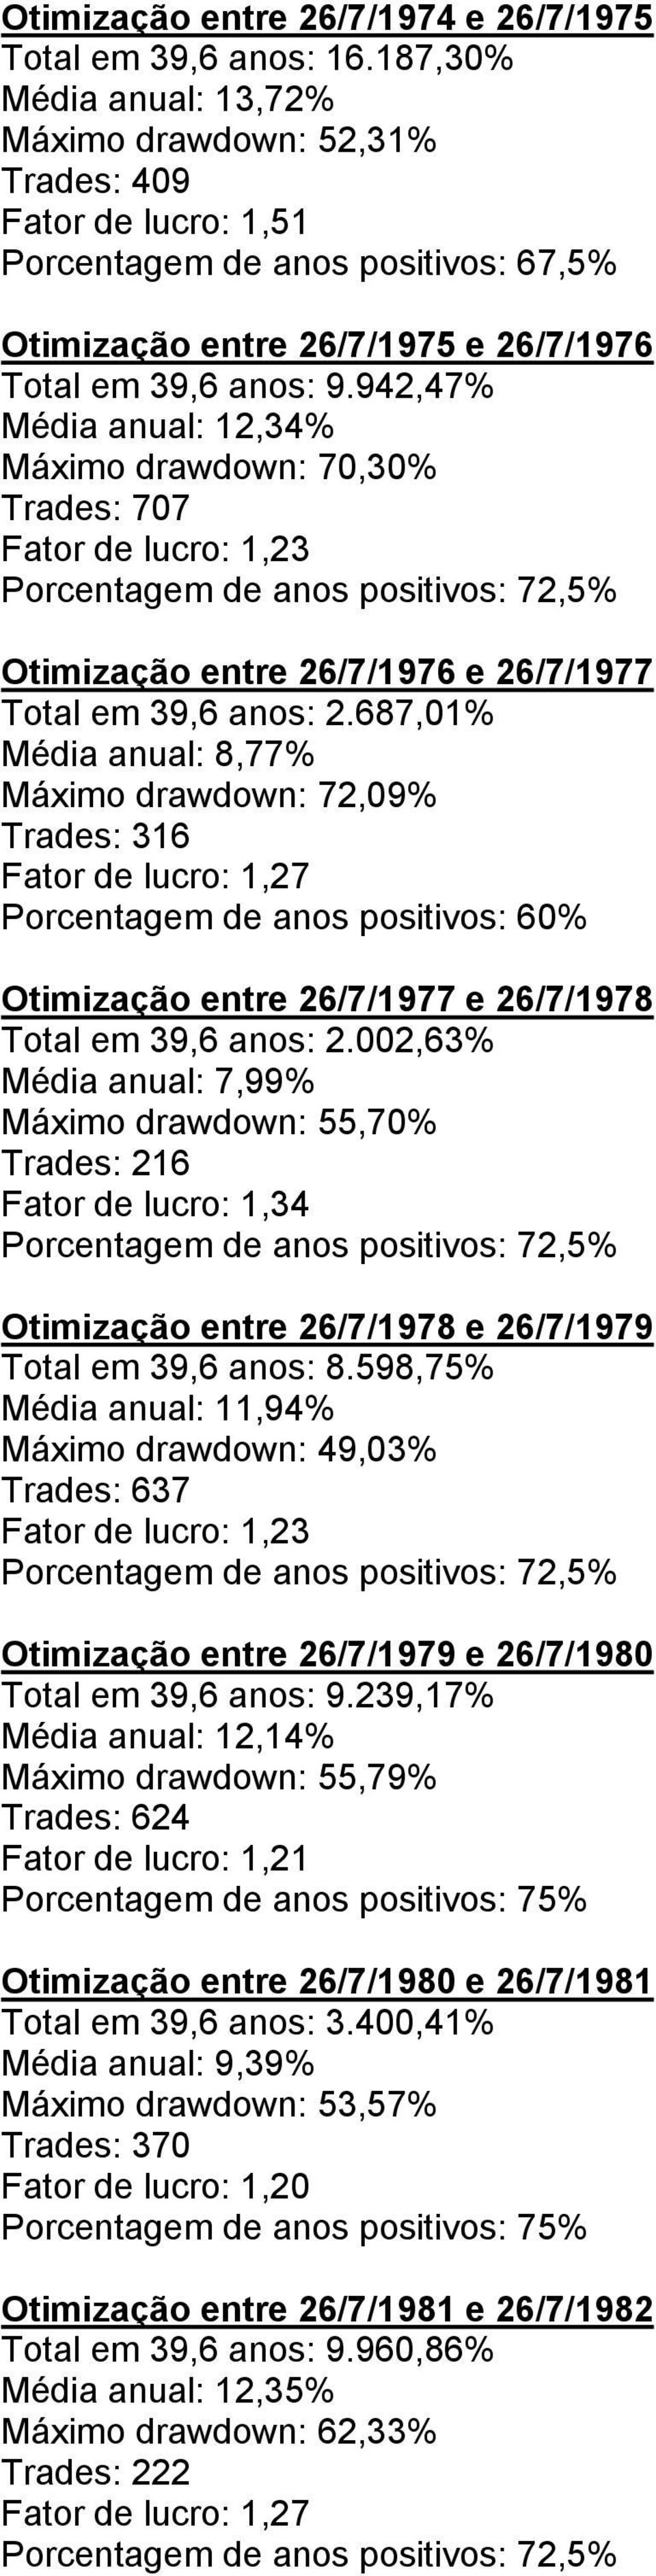 942,47% Média anual: 12,34% Máximo drawdown: 70,30% Trades: 707 Fator de lucro: 1,23 Porcentagem de anos positivos: 72,5% Otimização entre 26/7/1976 e 26/7/1977 Total em 39,6 anos: 2.